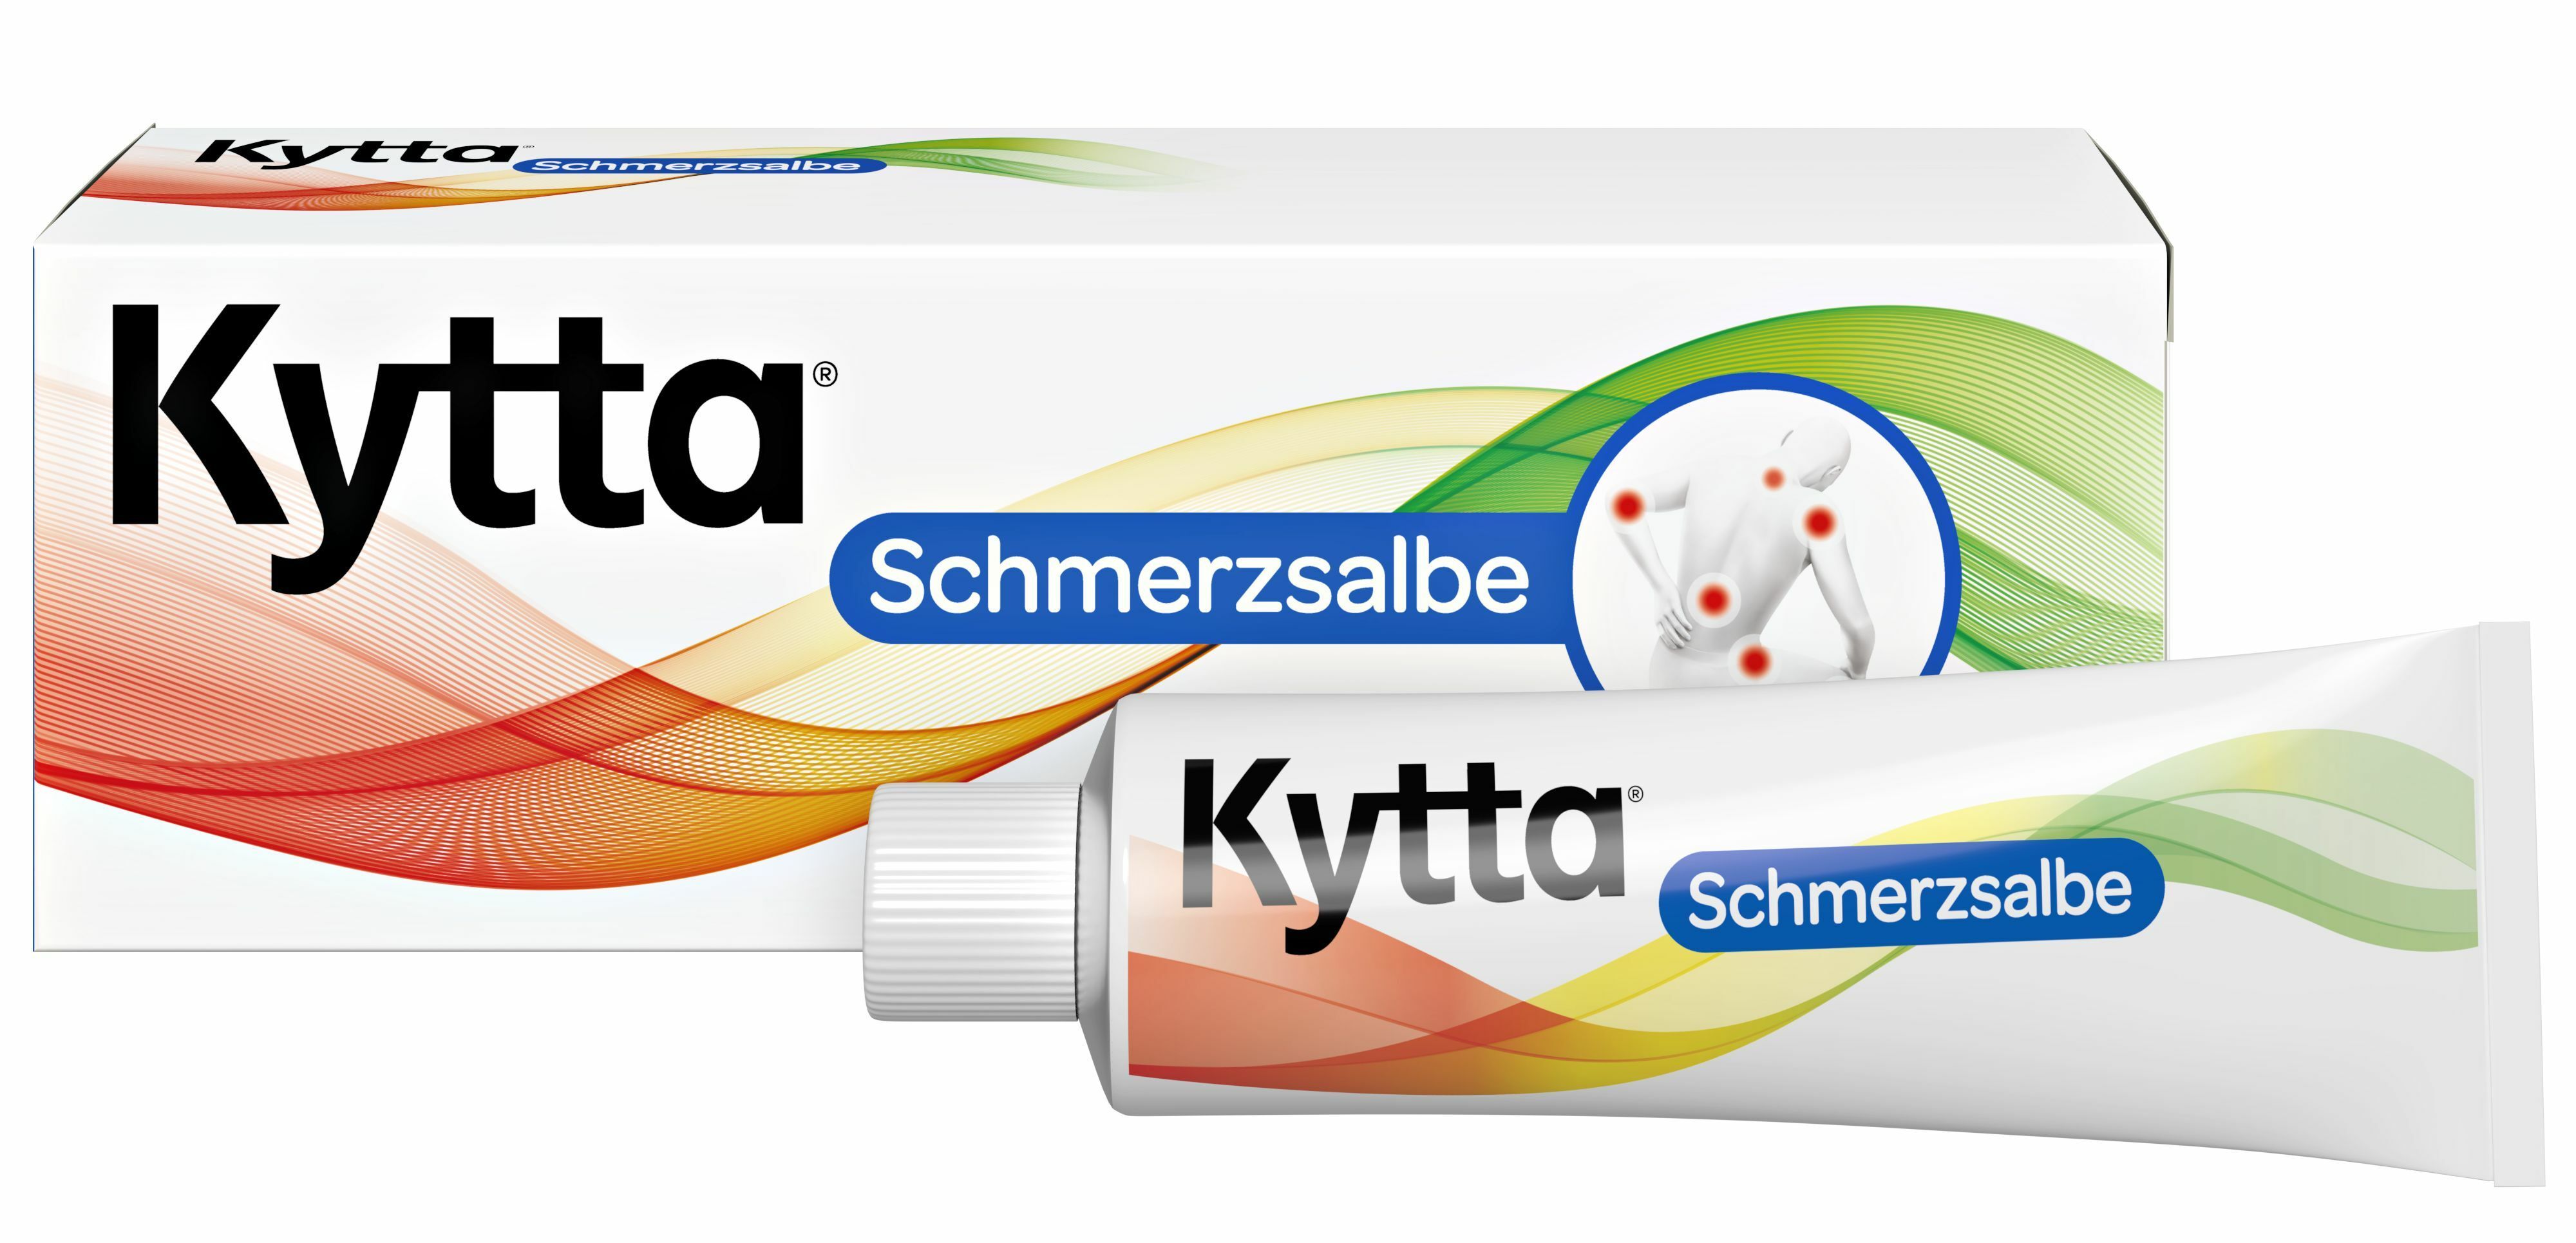 Kytta® Schmerzsalbe - Jetzt 10 %-Rabatt sichern* mit kytta10